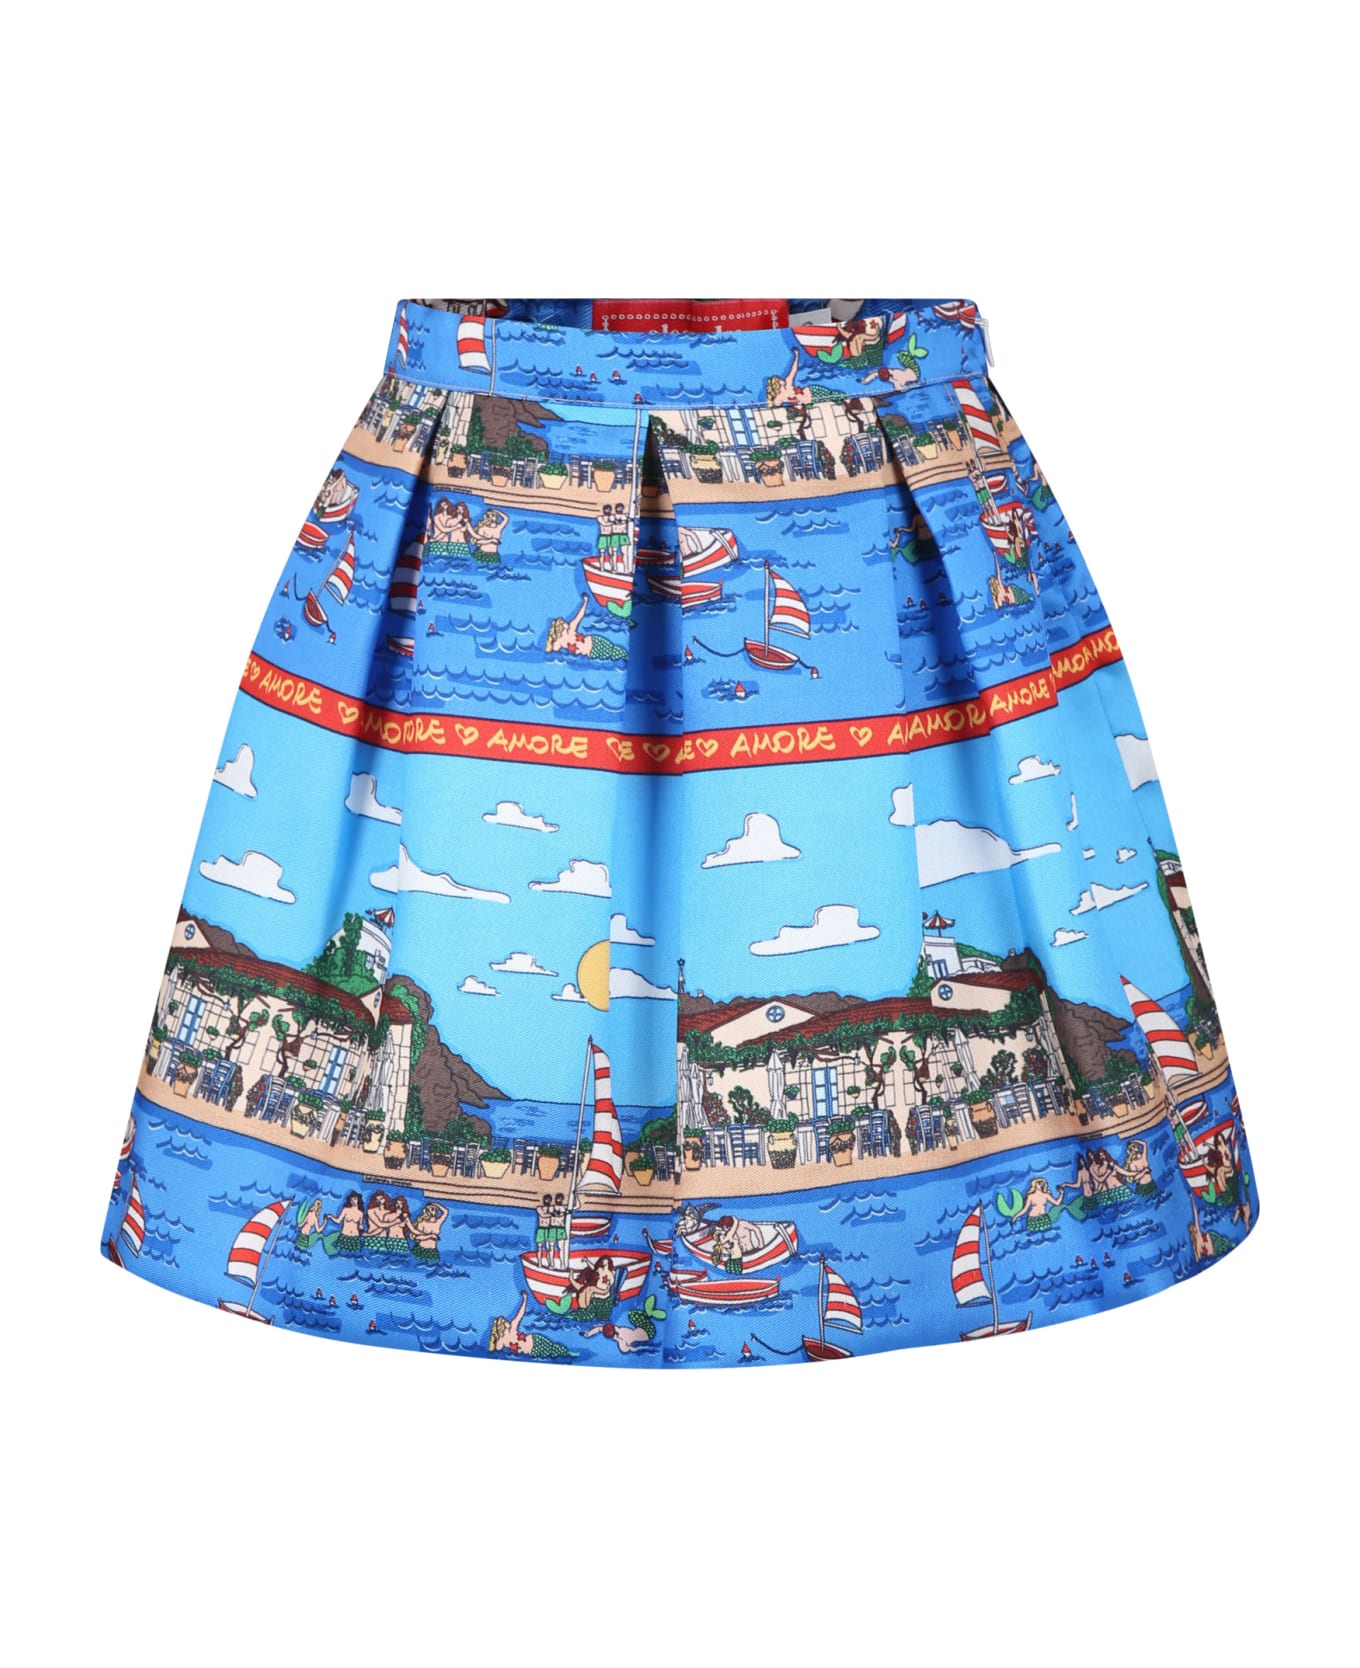 Alessandro Enriquez Light Blue Skirt For Girl With Pop Print - Light Blue